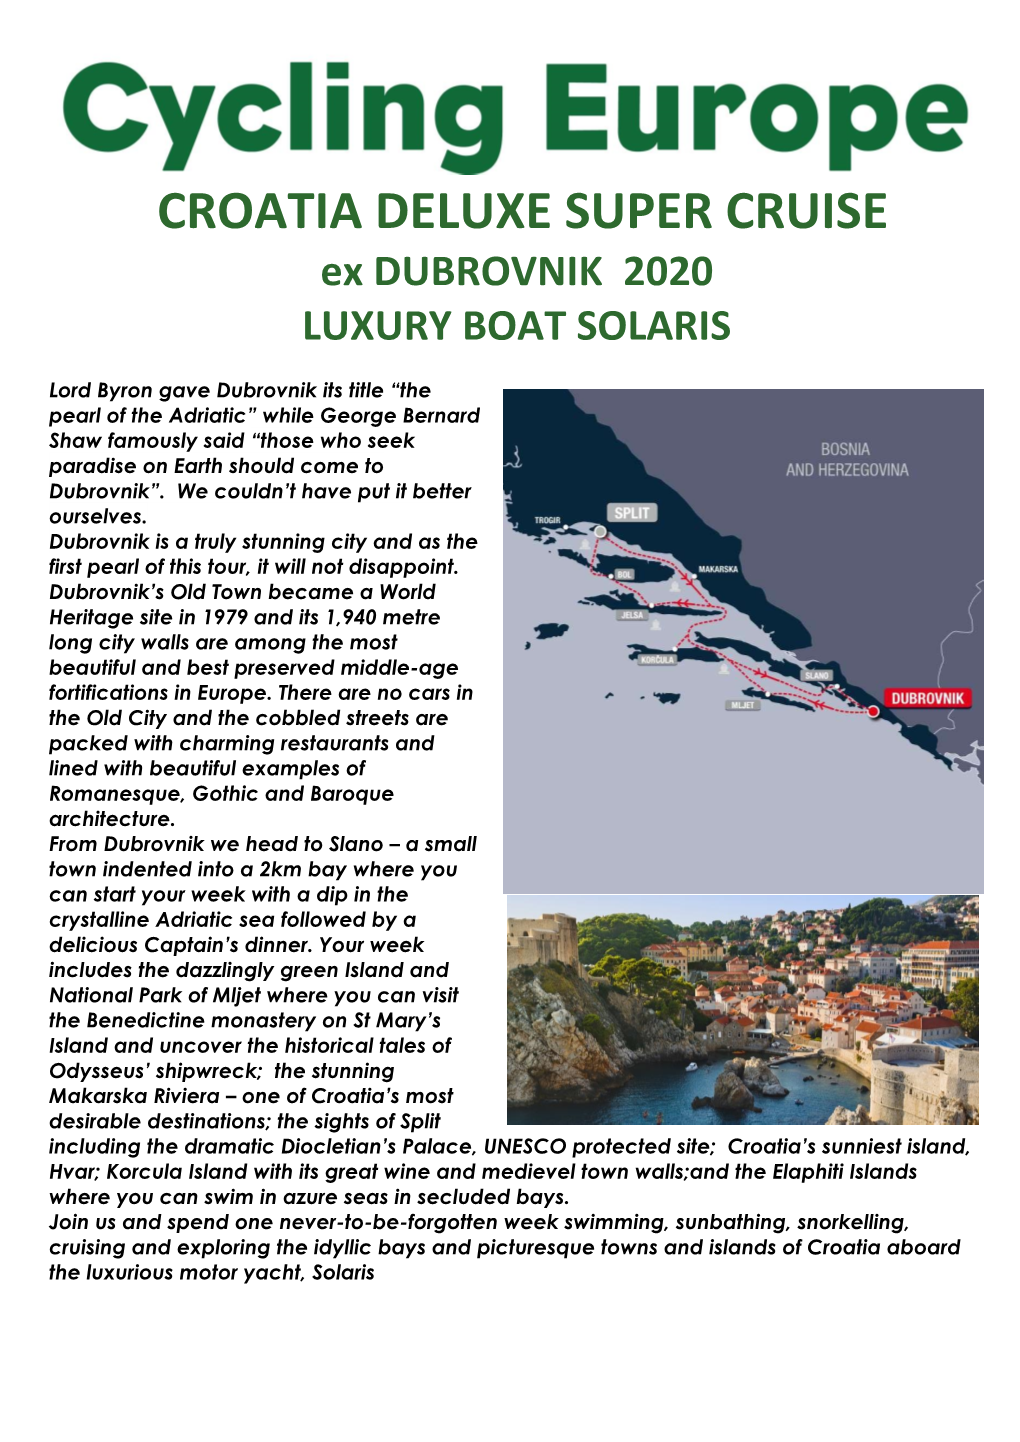 CROATIA DELUXE SUPER CRUISE Ex DUBROVNIK 2020 LUXURY BOAT SOLARIS